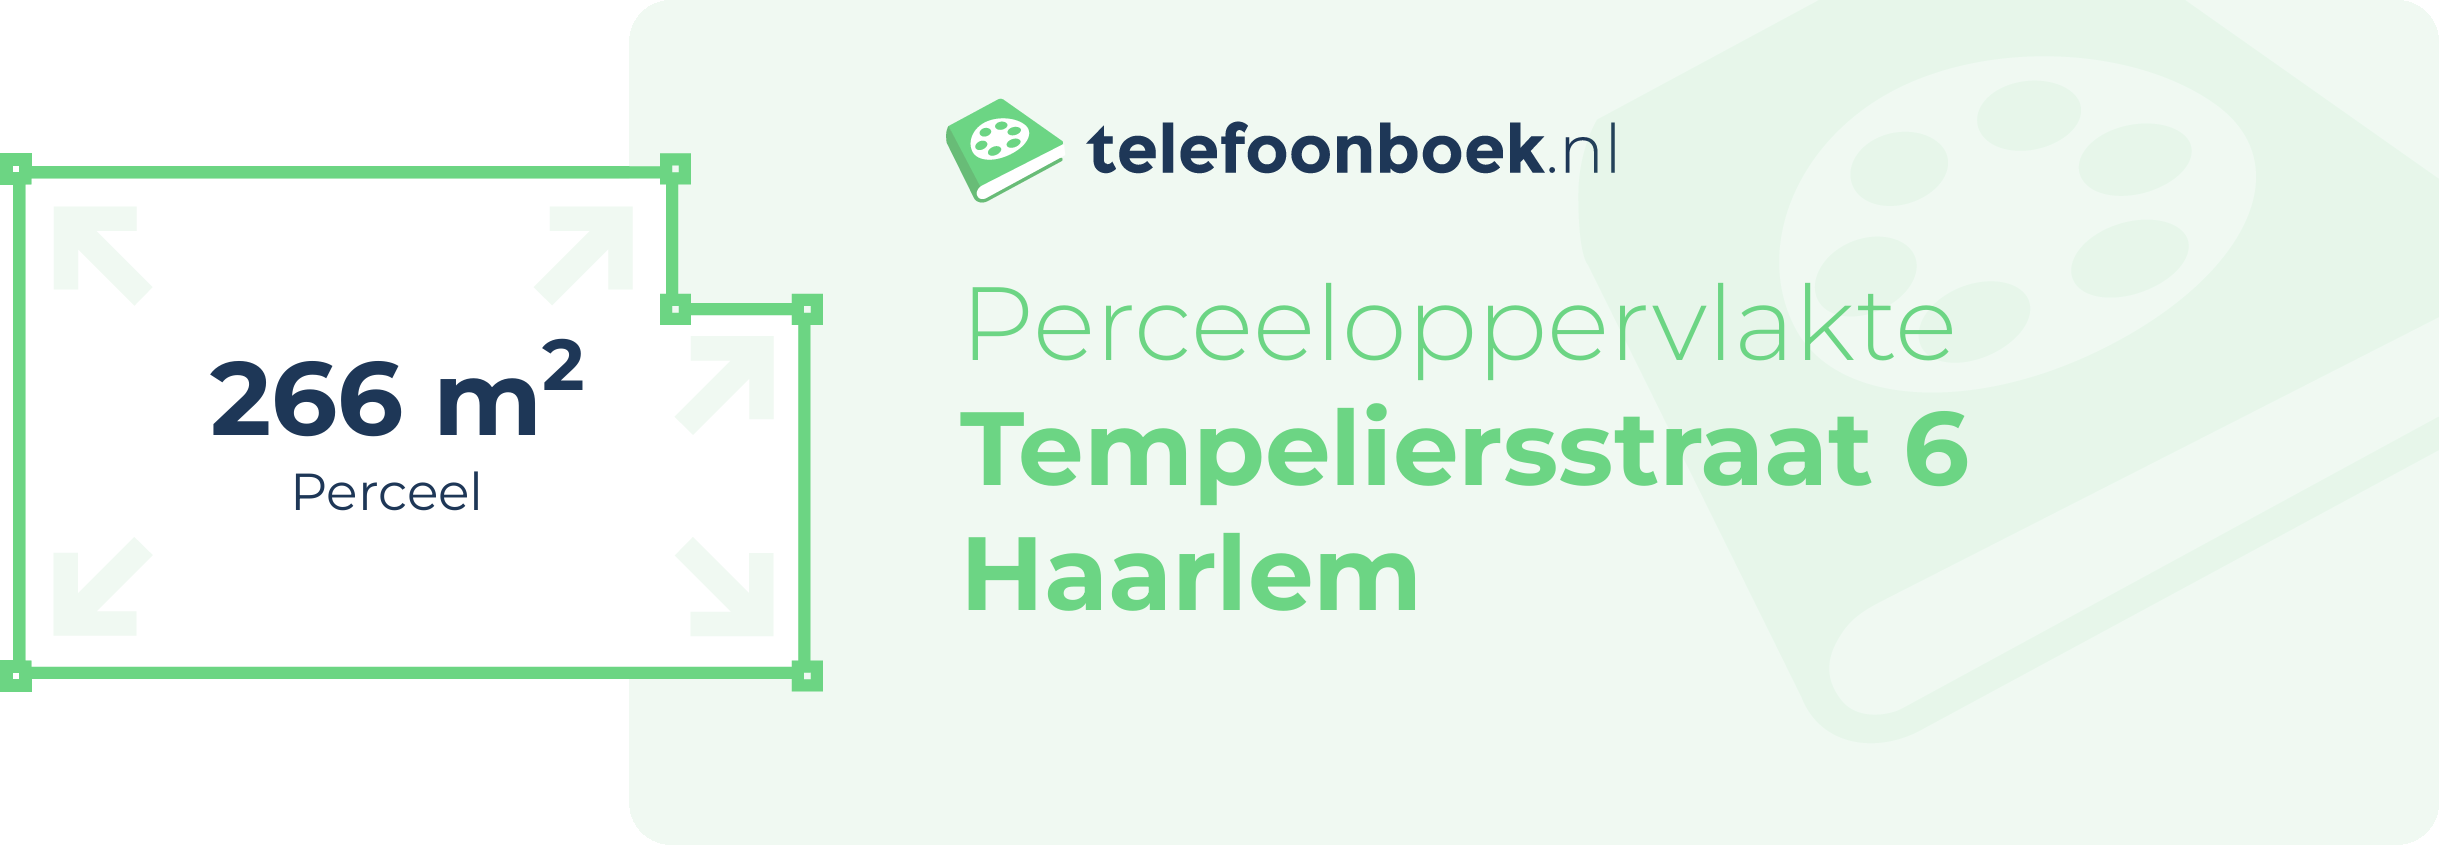 Perceeloppervlakte Tempeliersstraat 6 Haarlem